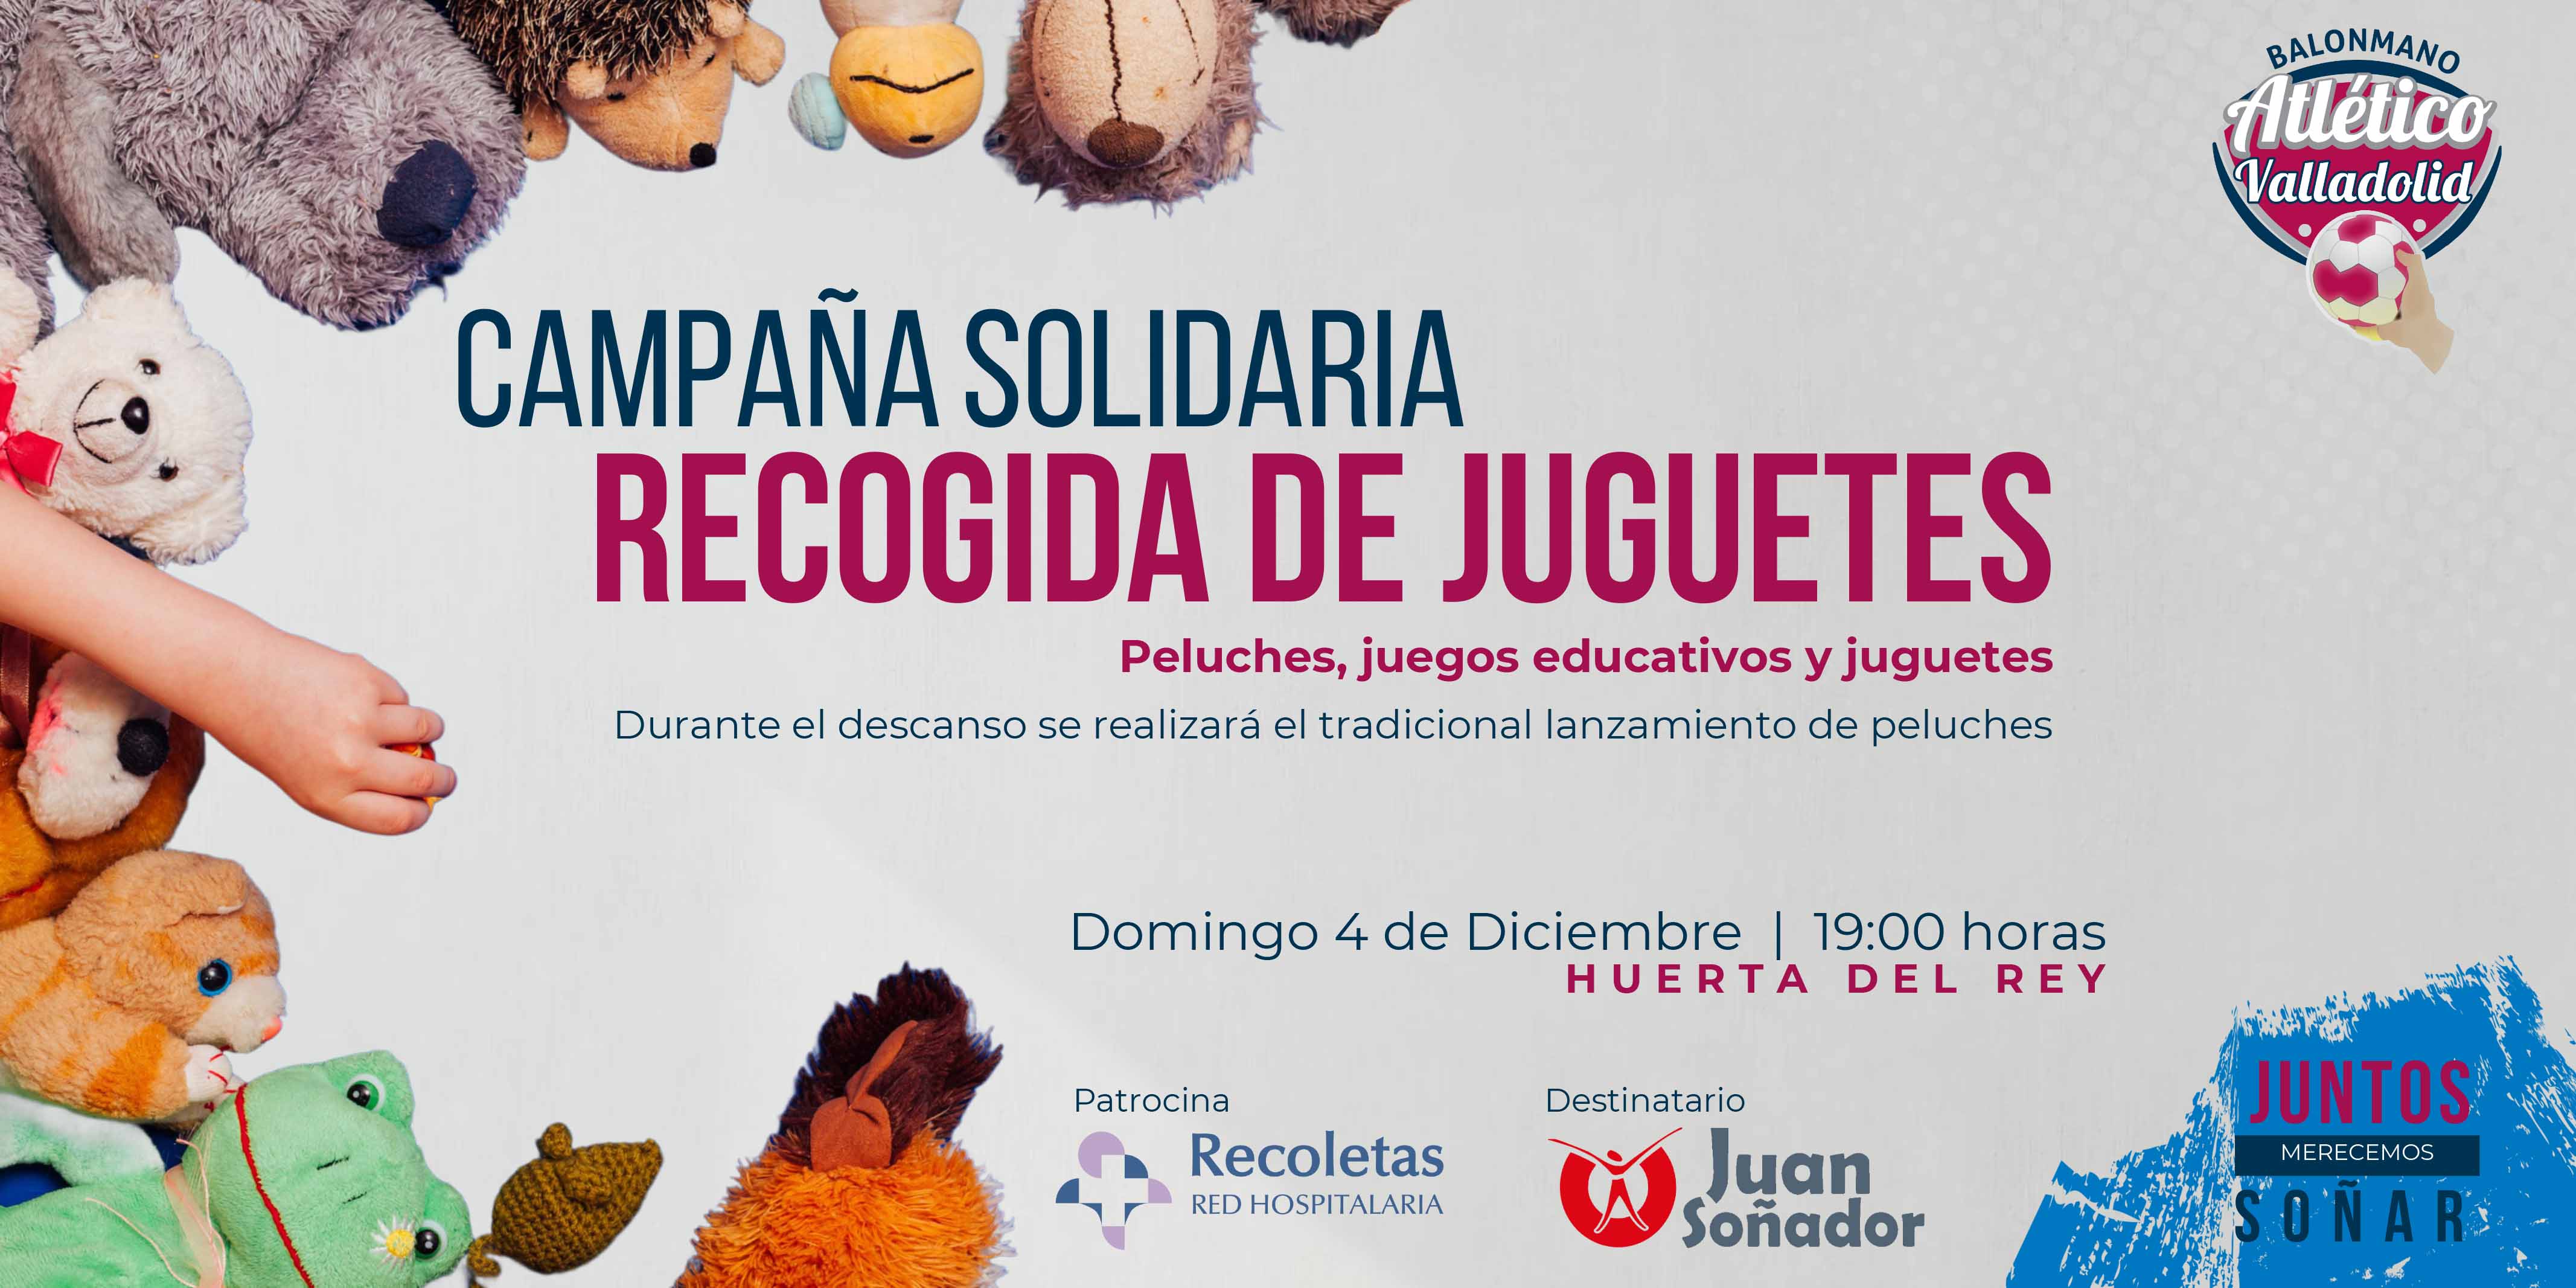 El Recoletas organiza su recogida solidaria de juguetes y recupera el lanzamiento de peluches